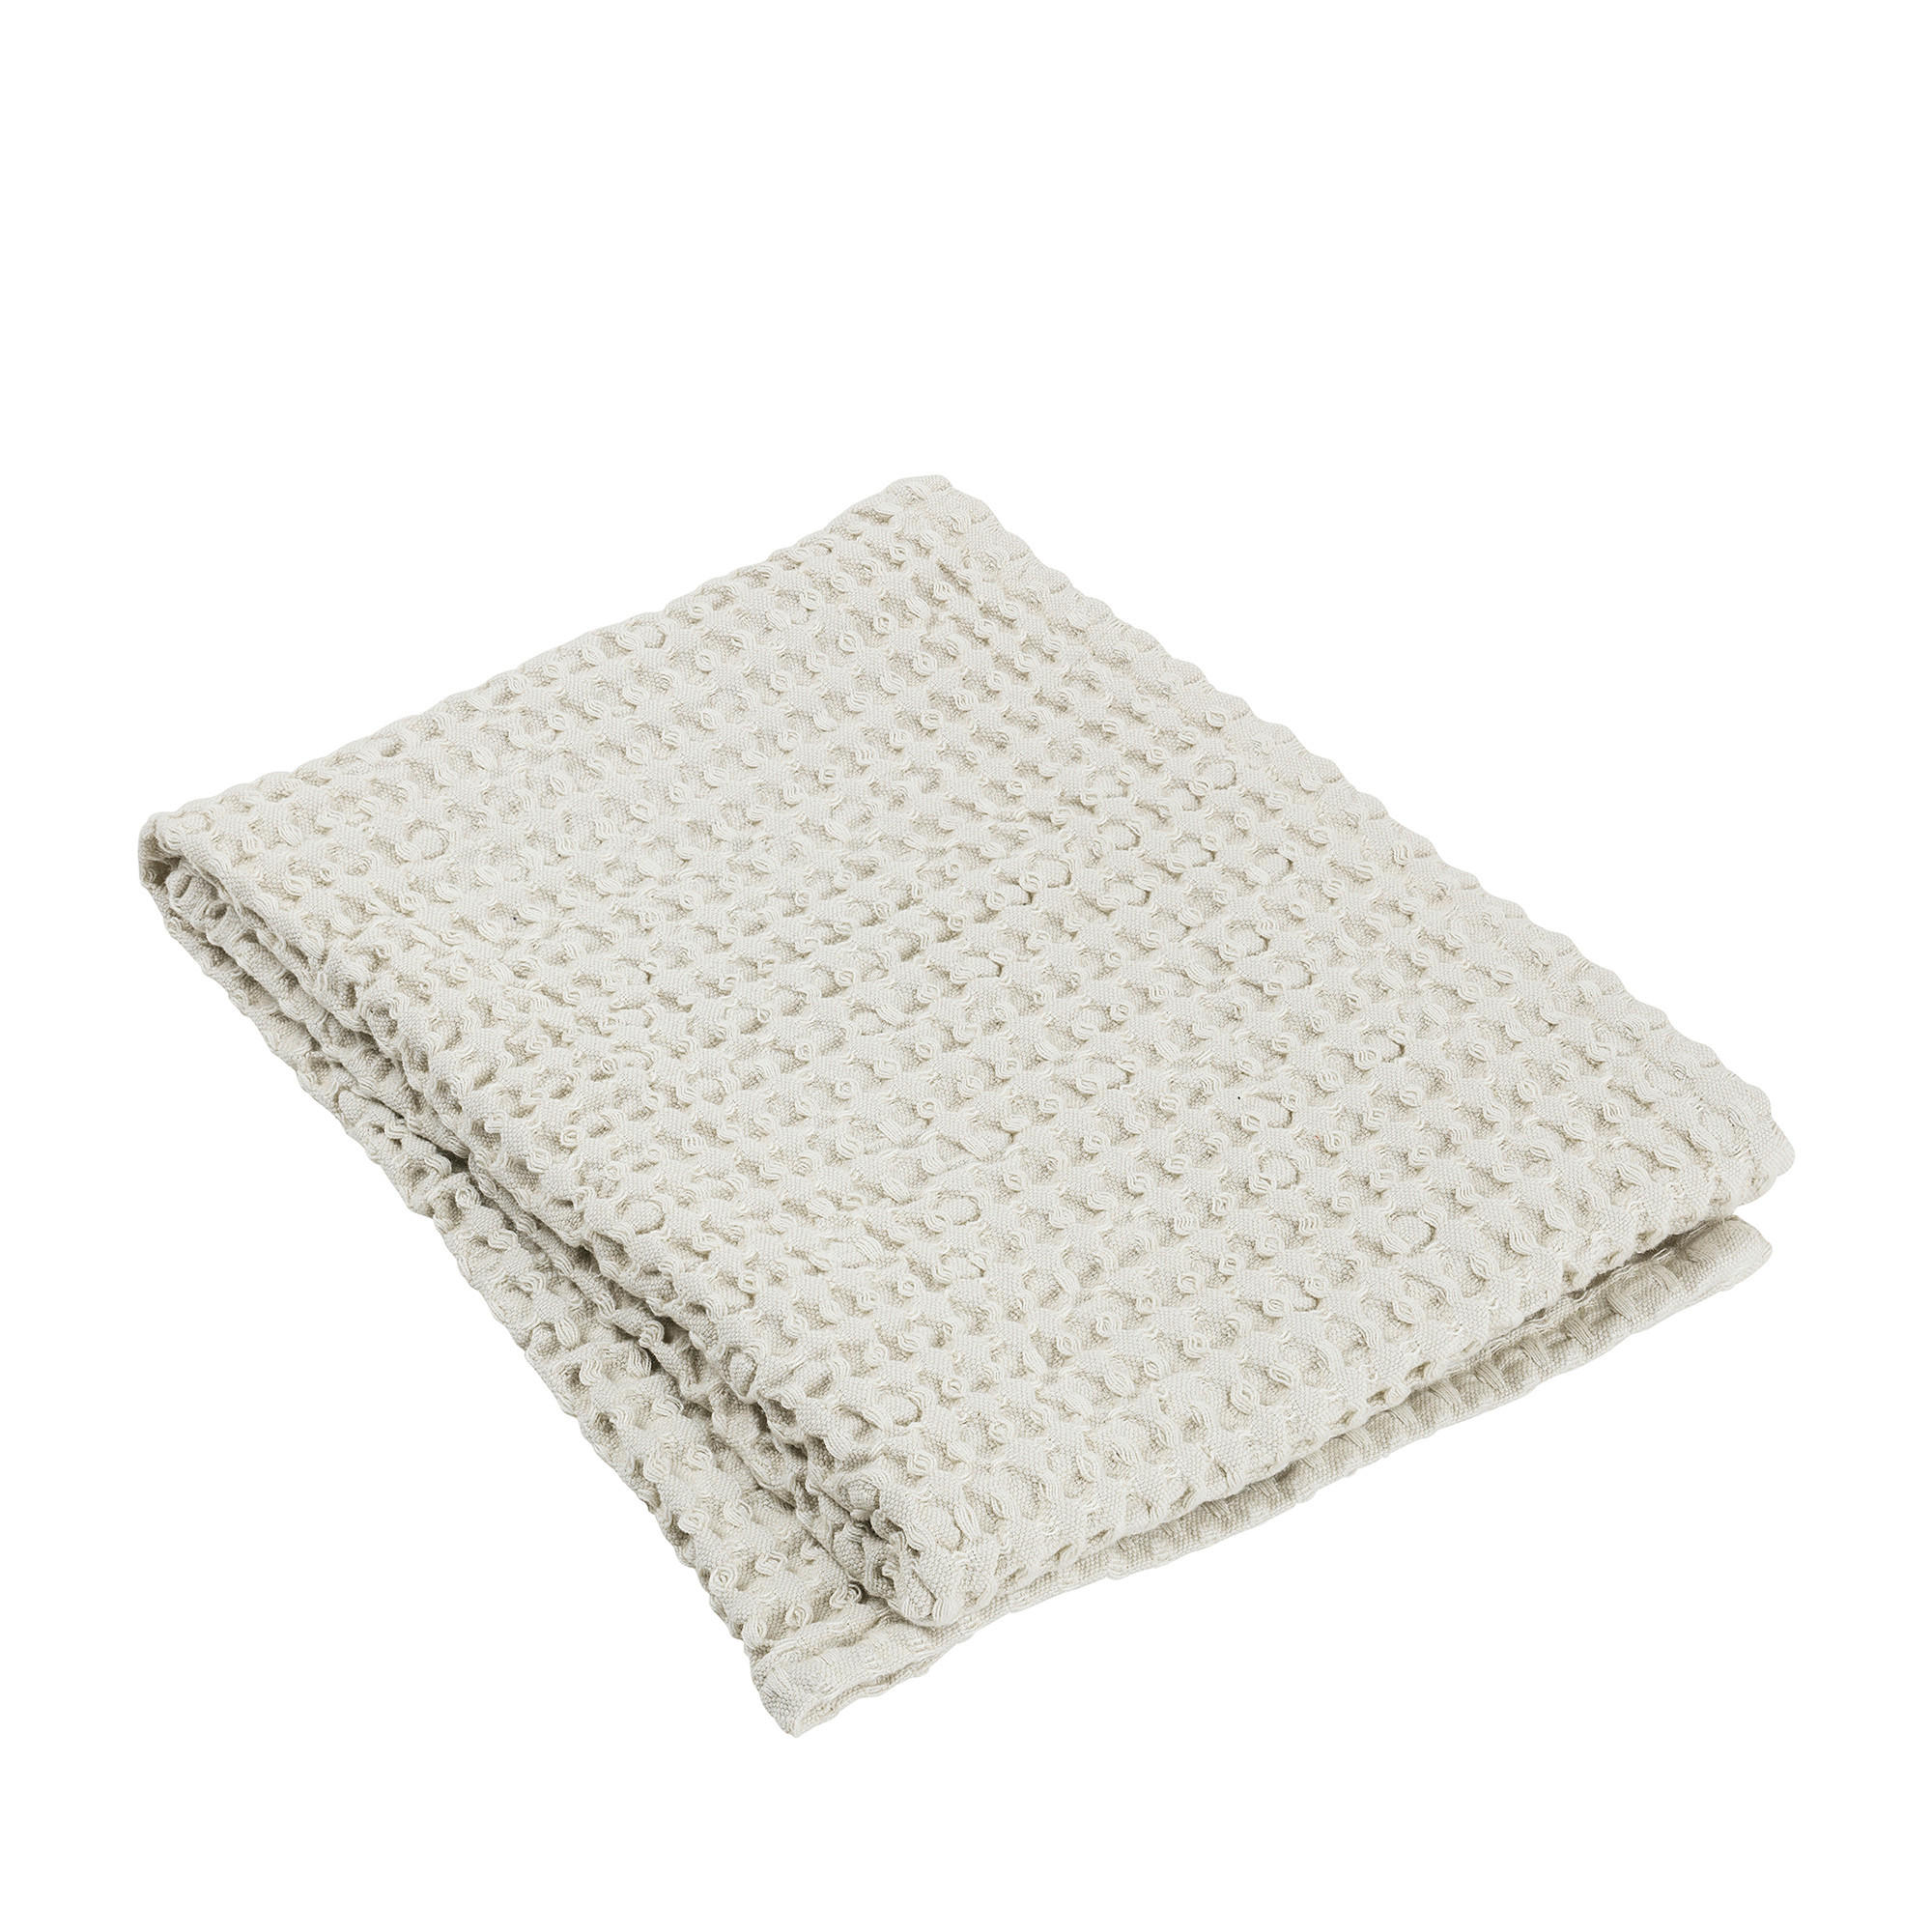 HANDTUCH CARO  - Beige, Design, Textil (100,0/50,0cm) - Blomus